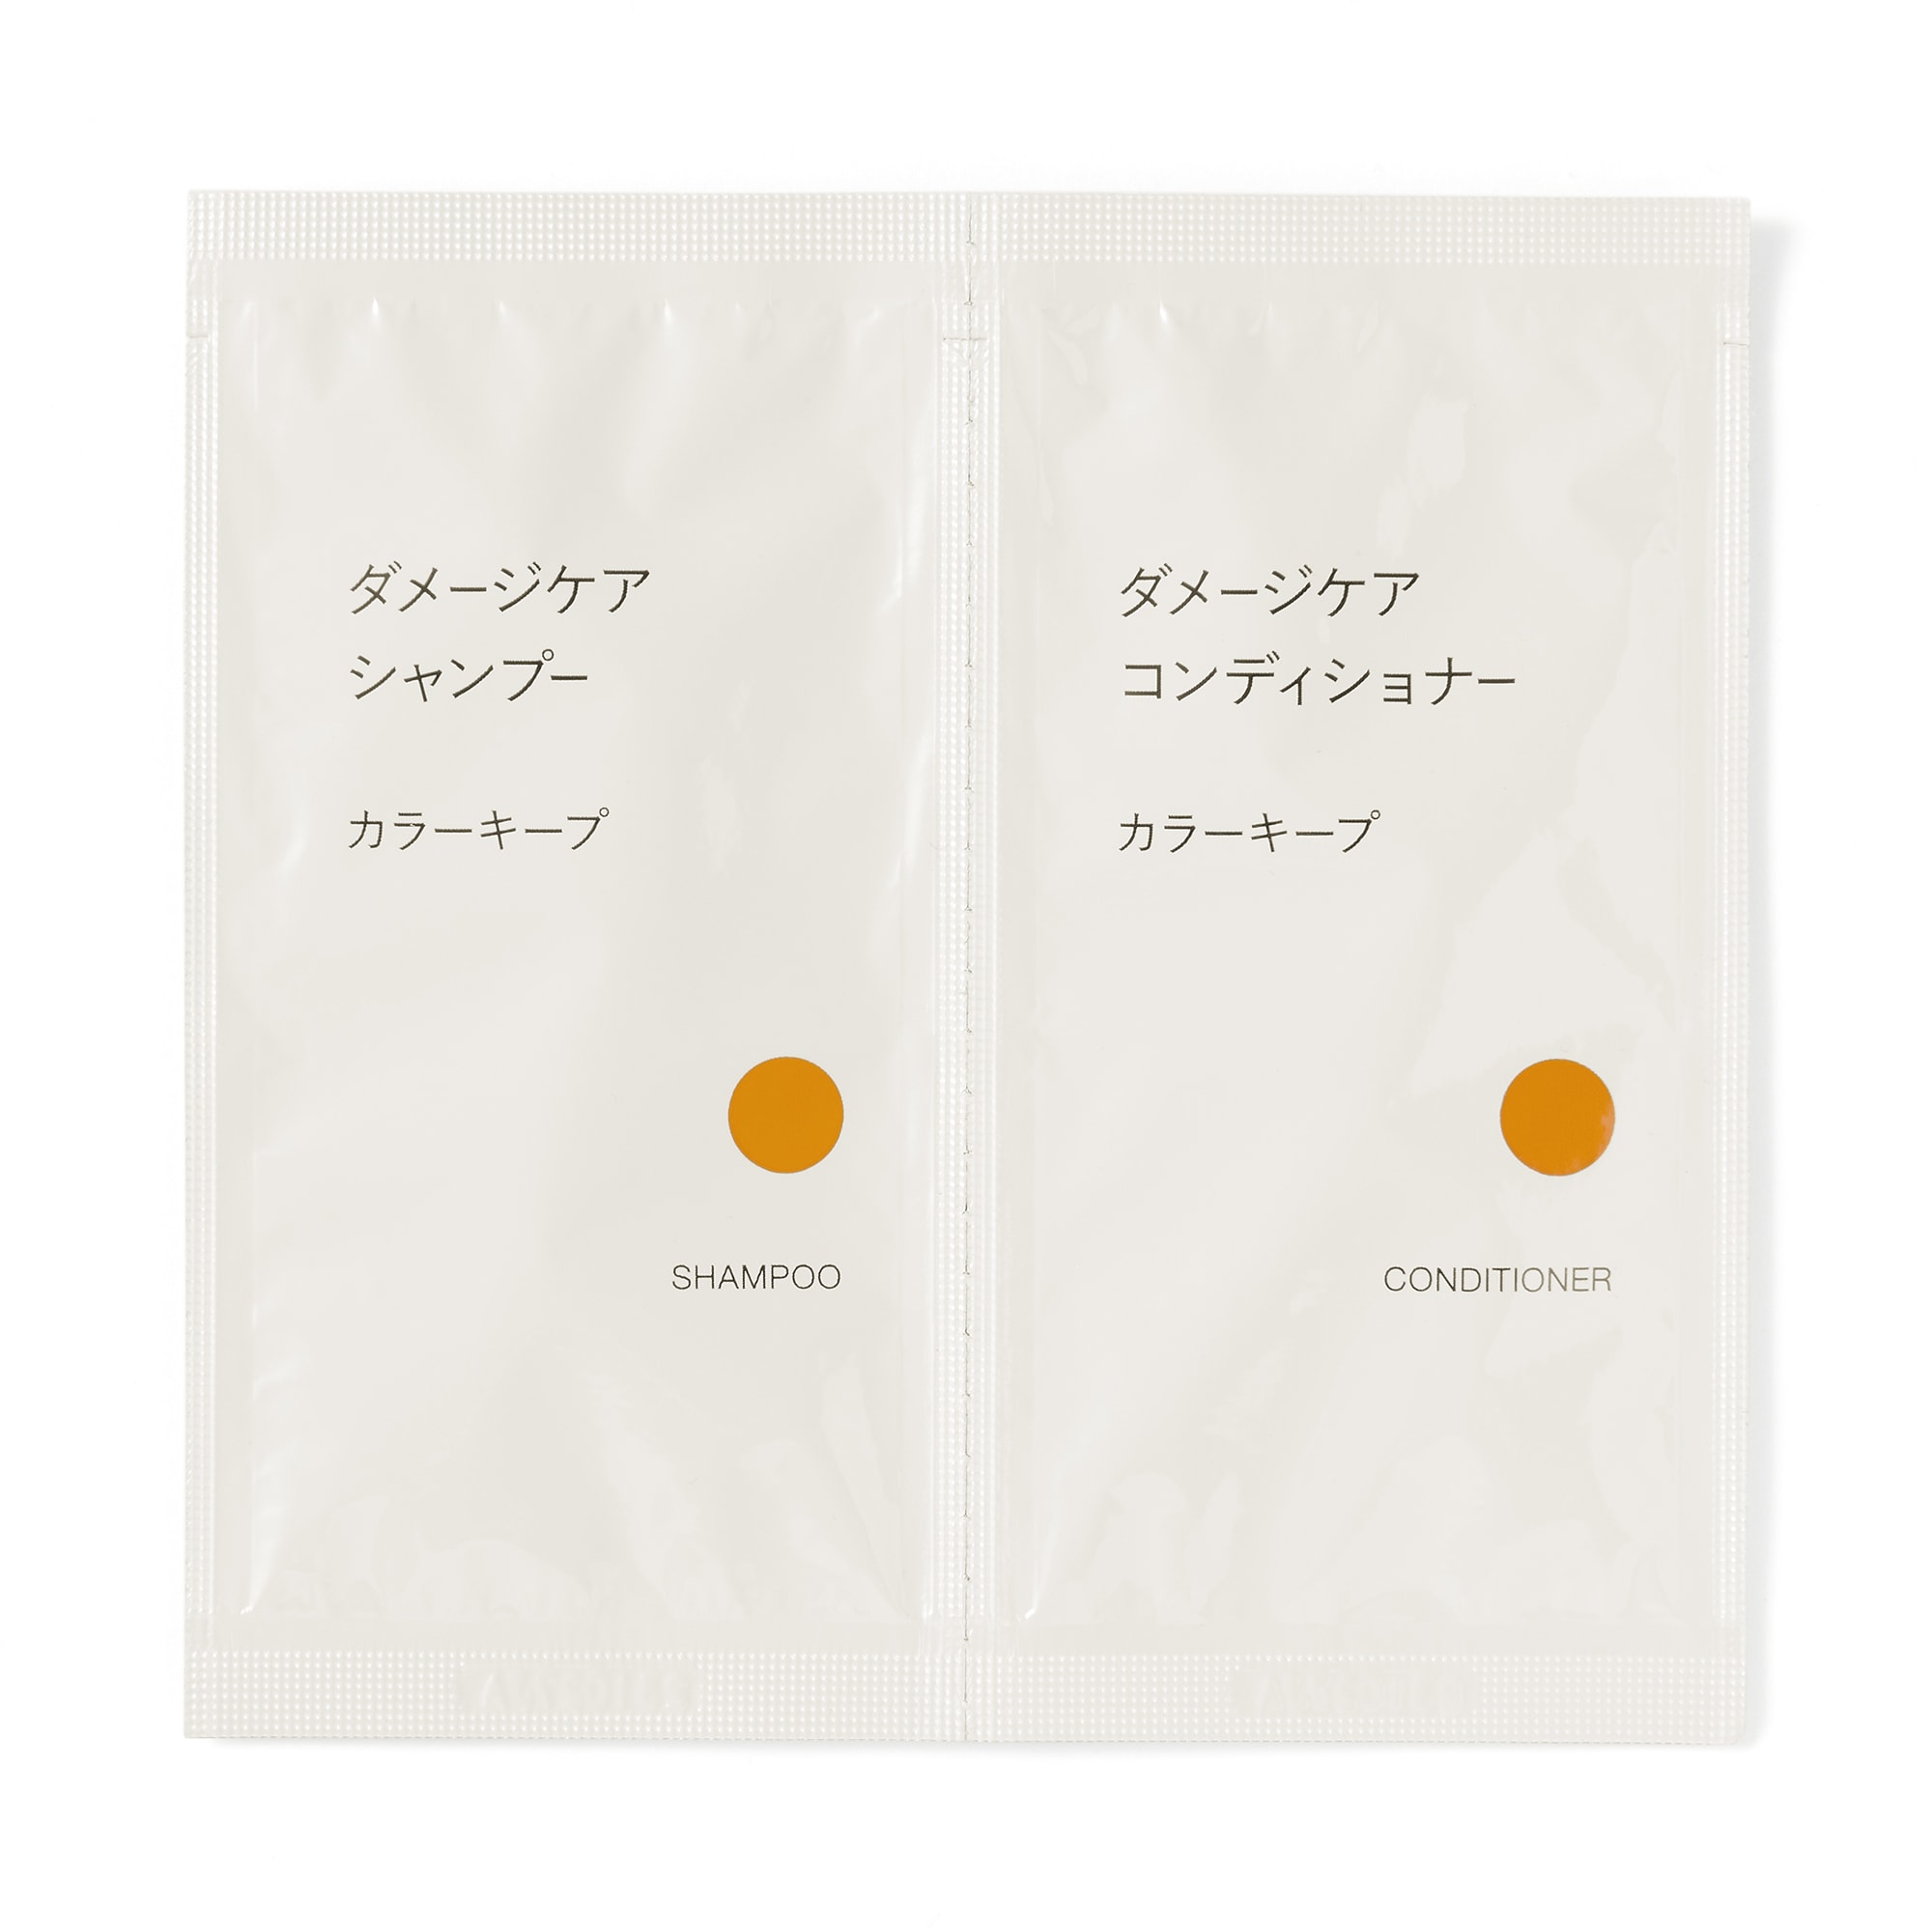 무인양품 일본 케어 샴푸 컨디셔너 세트 컬러 유지